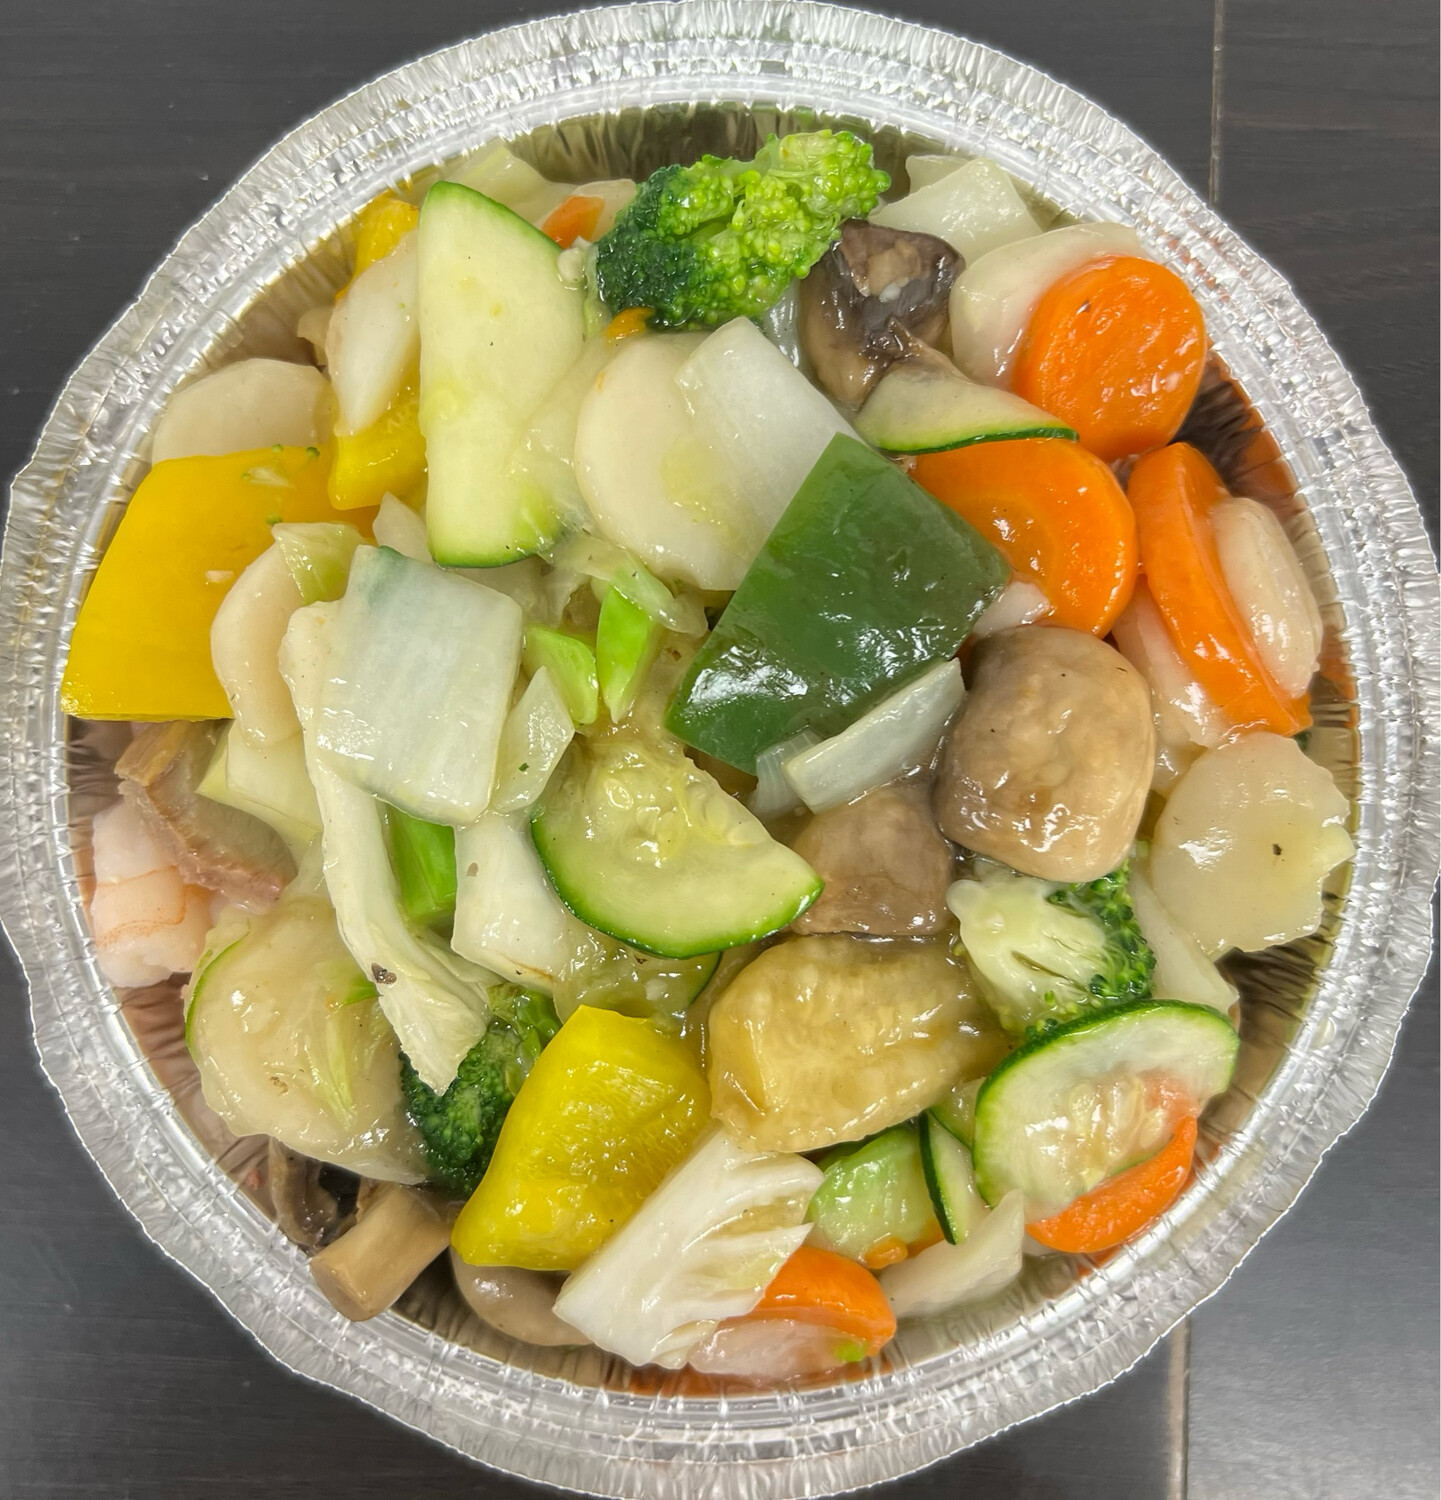 Moo Goo Guy Pan
Morceaux de poulet blanc
et légumes chinois